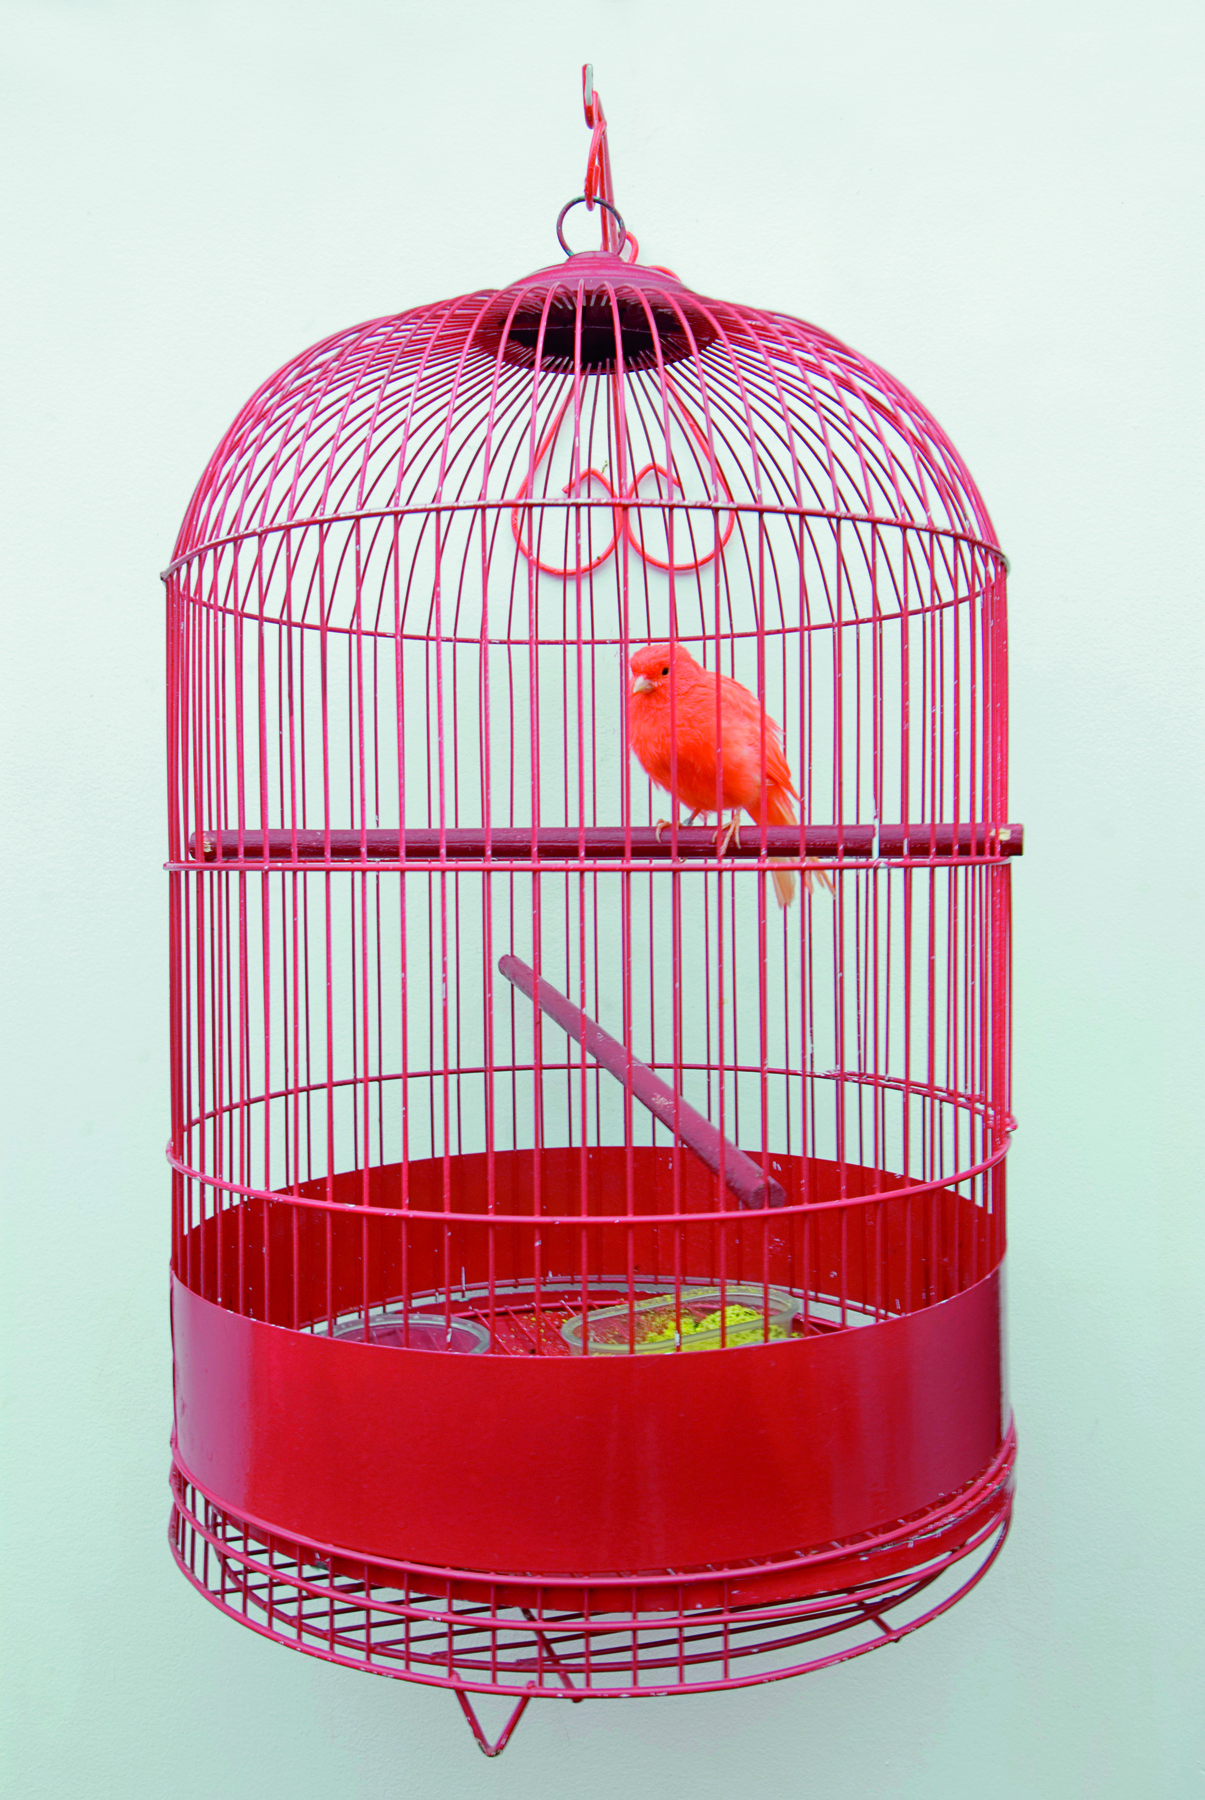 Fotografia. Detalhe da instalação com móveis vermelhos: uma gaiola vermelha arredondada com um pássaro vermelho sobre o poleiro.